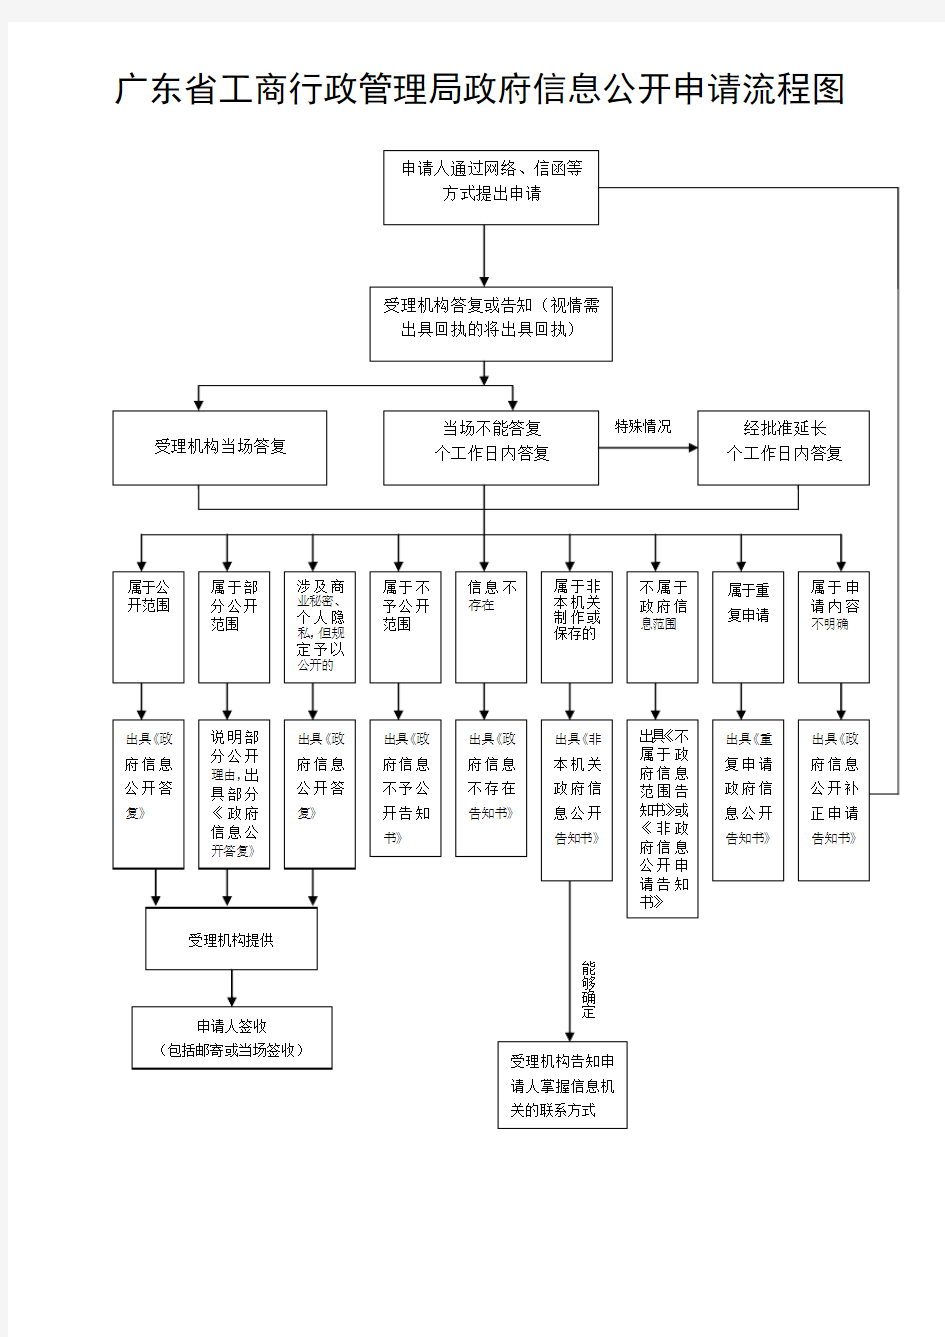 广东省工商行政管理局政府信息公开申请流程图